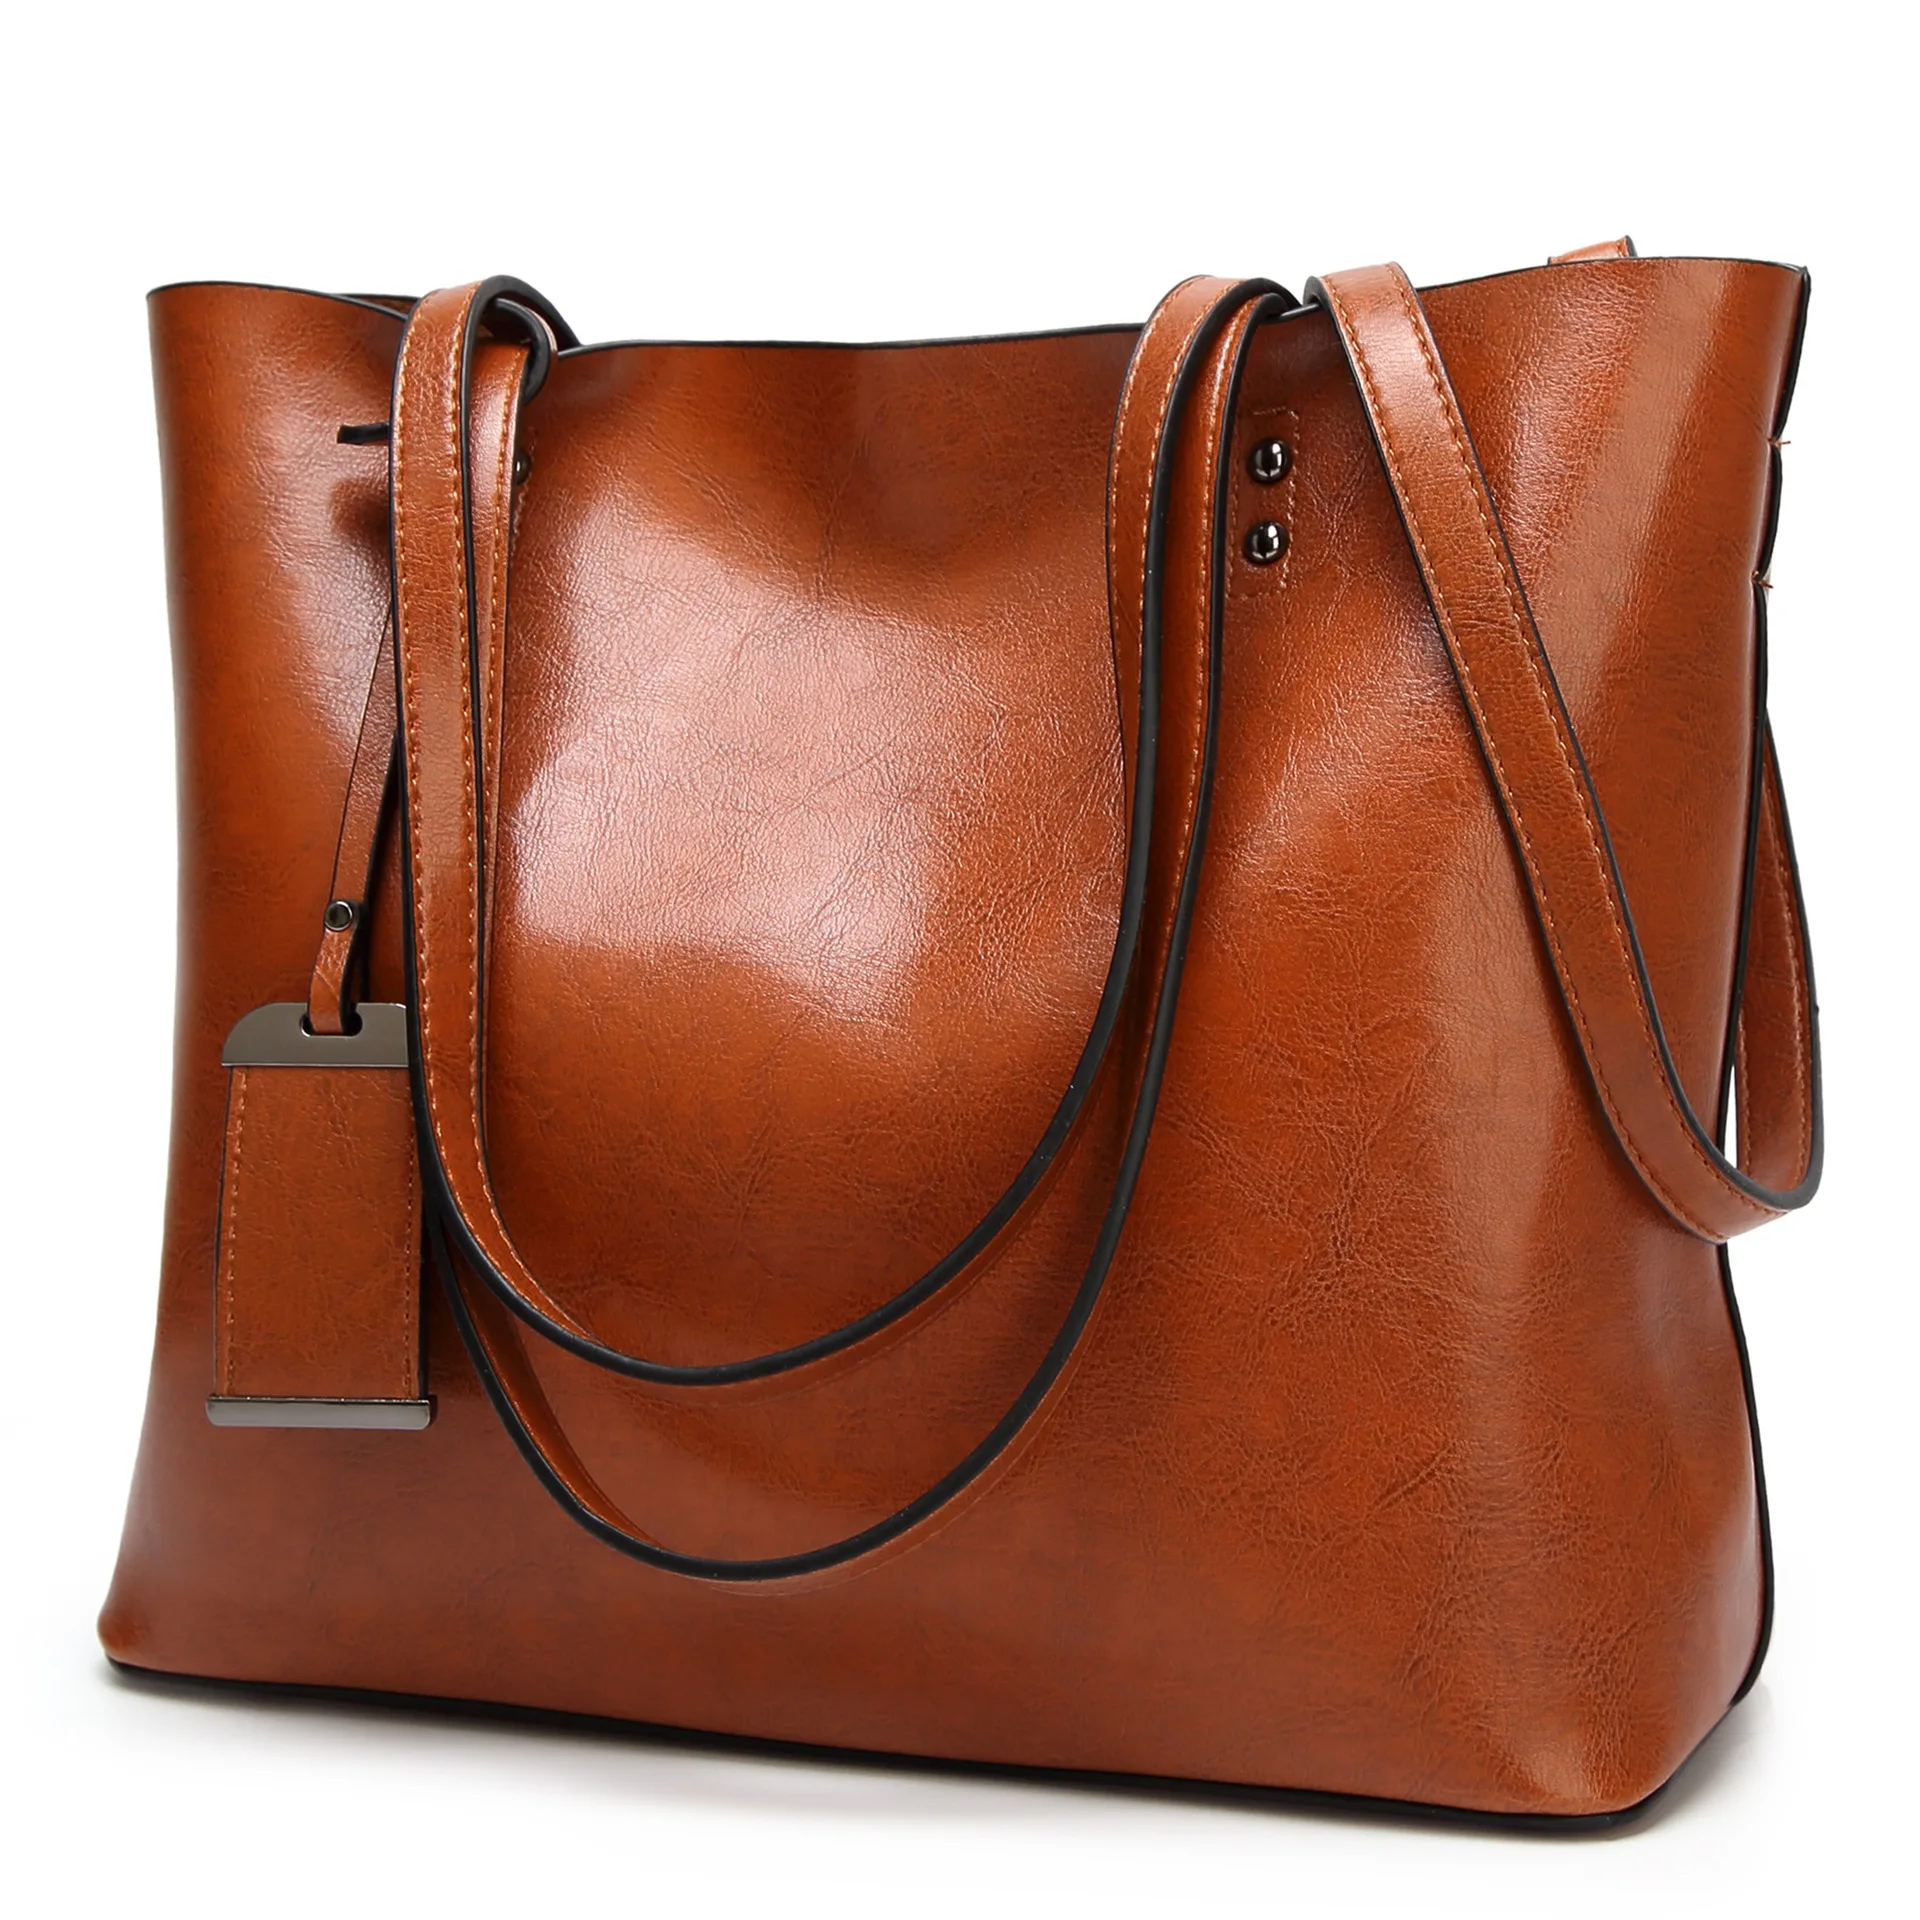 

The female bag Europe and the United States cross-border leather bags fashion handbag shoulder inclined shoulder bag bag bag